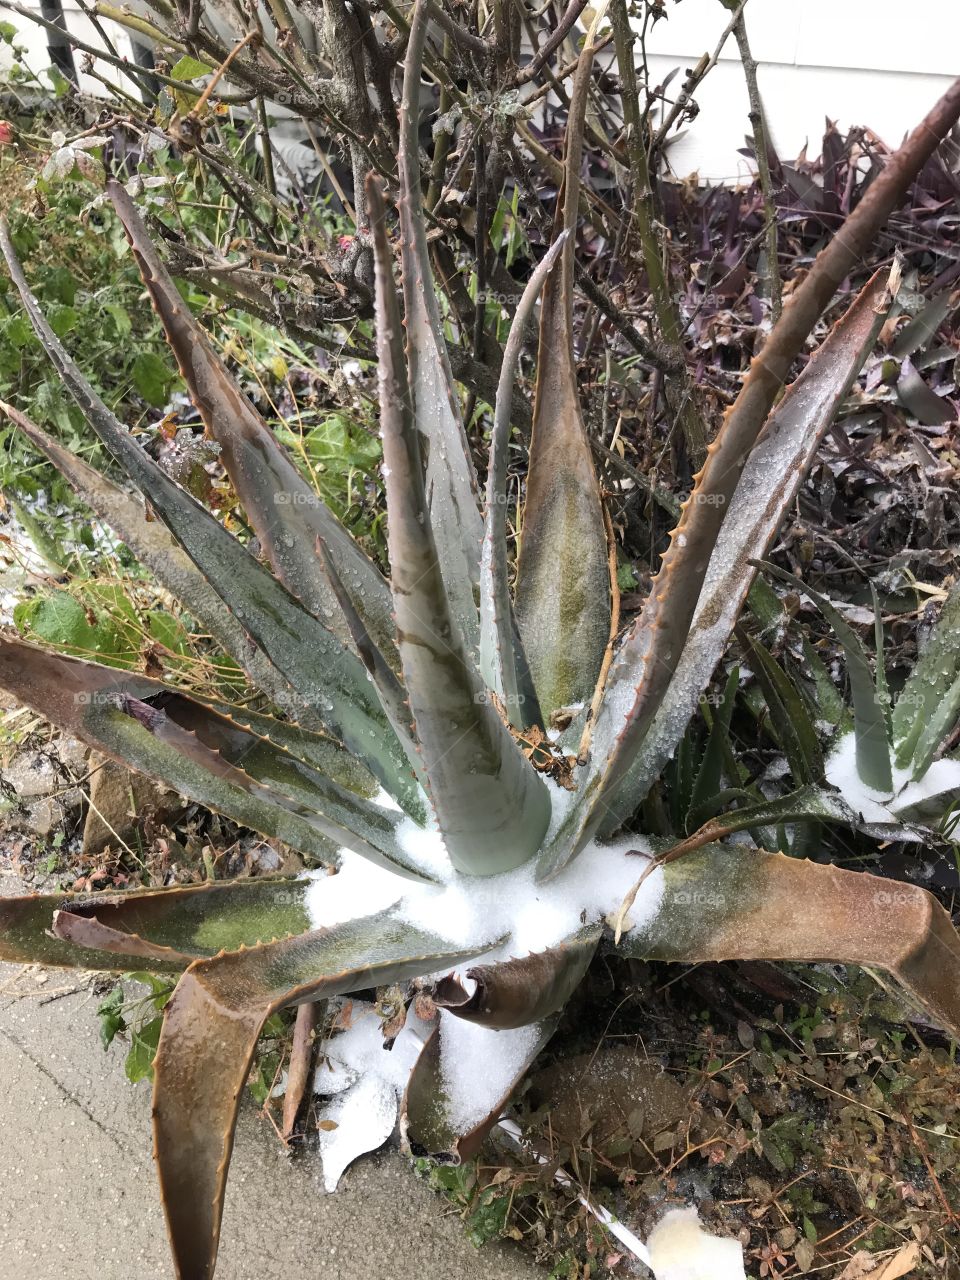 Snow on the Aloe